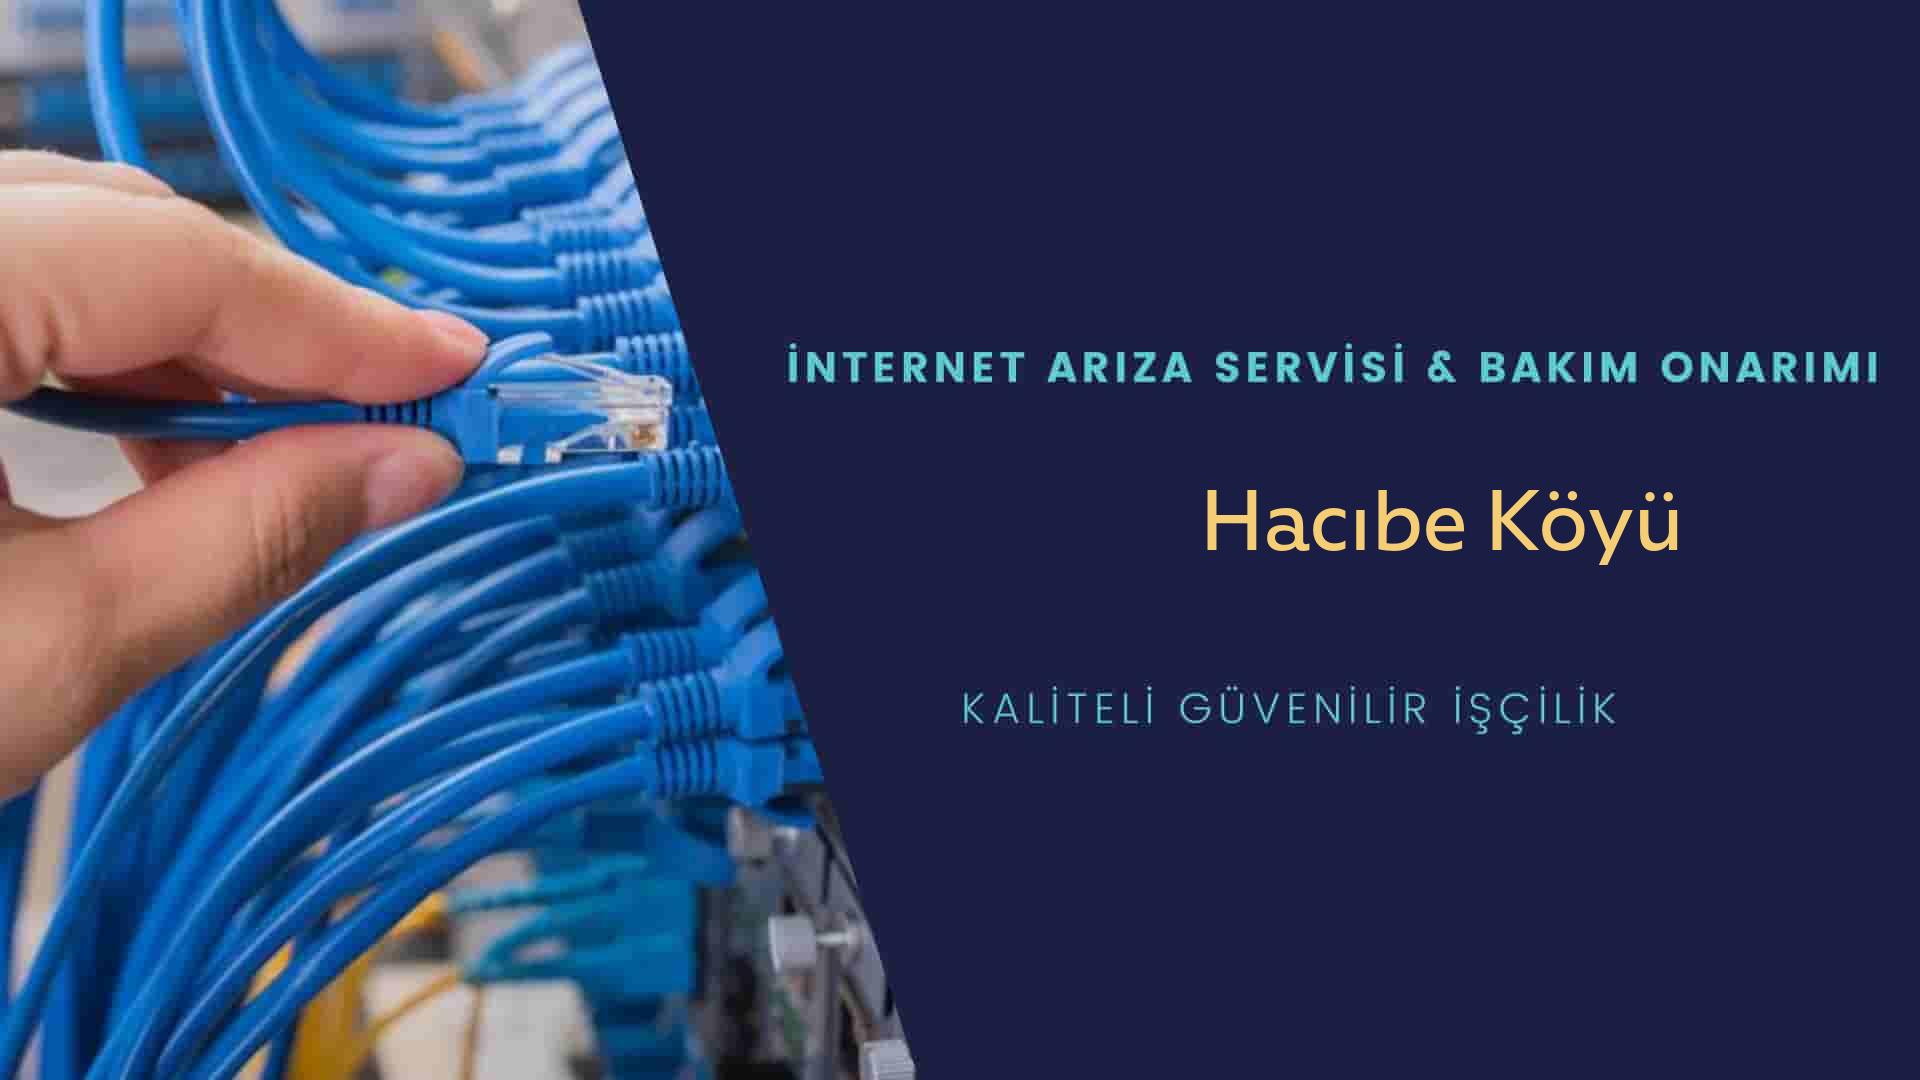 Hacıbe Köyü internet kablosu çekimi yapan yerler veya elektrikçiler mi? arıyorsunuz doğru yerdesiniz o zaman sizlere 7/24 yardımcı olacak profesyonel ustalarımız bir telefon kadar yakındır size.